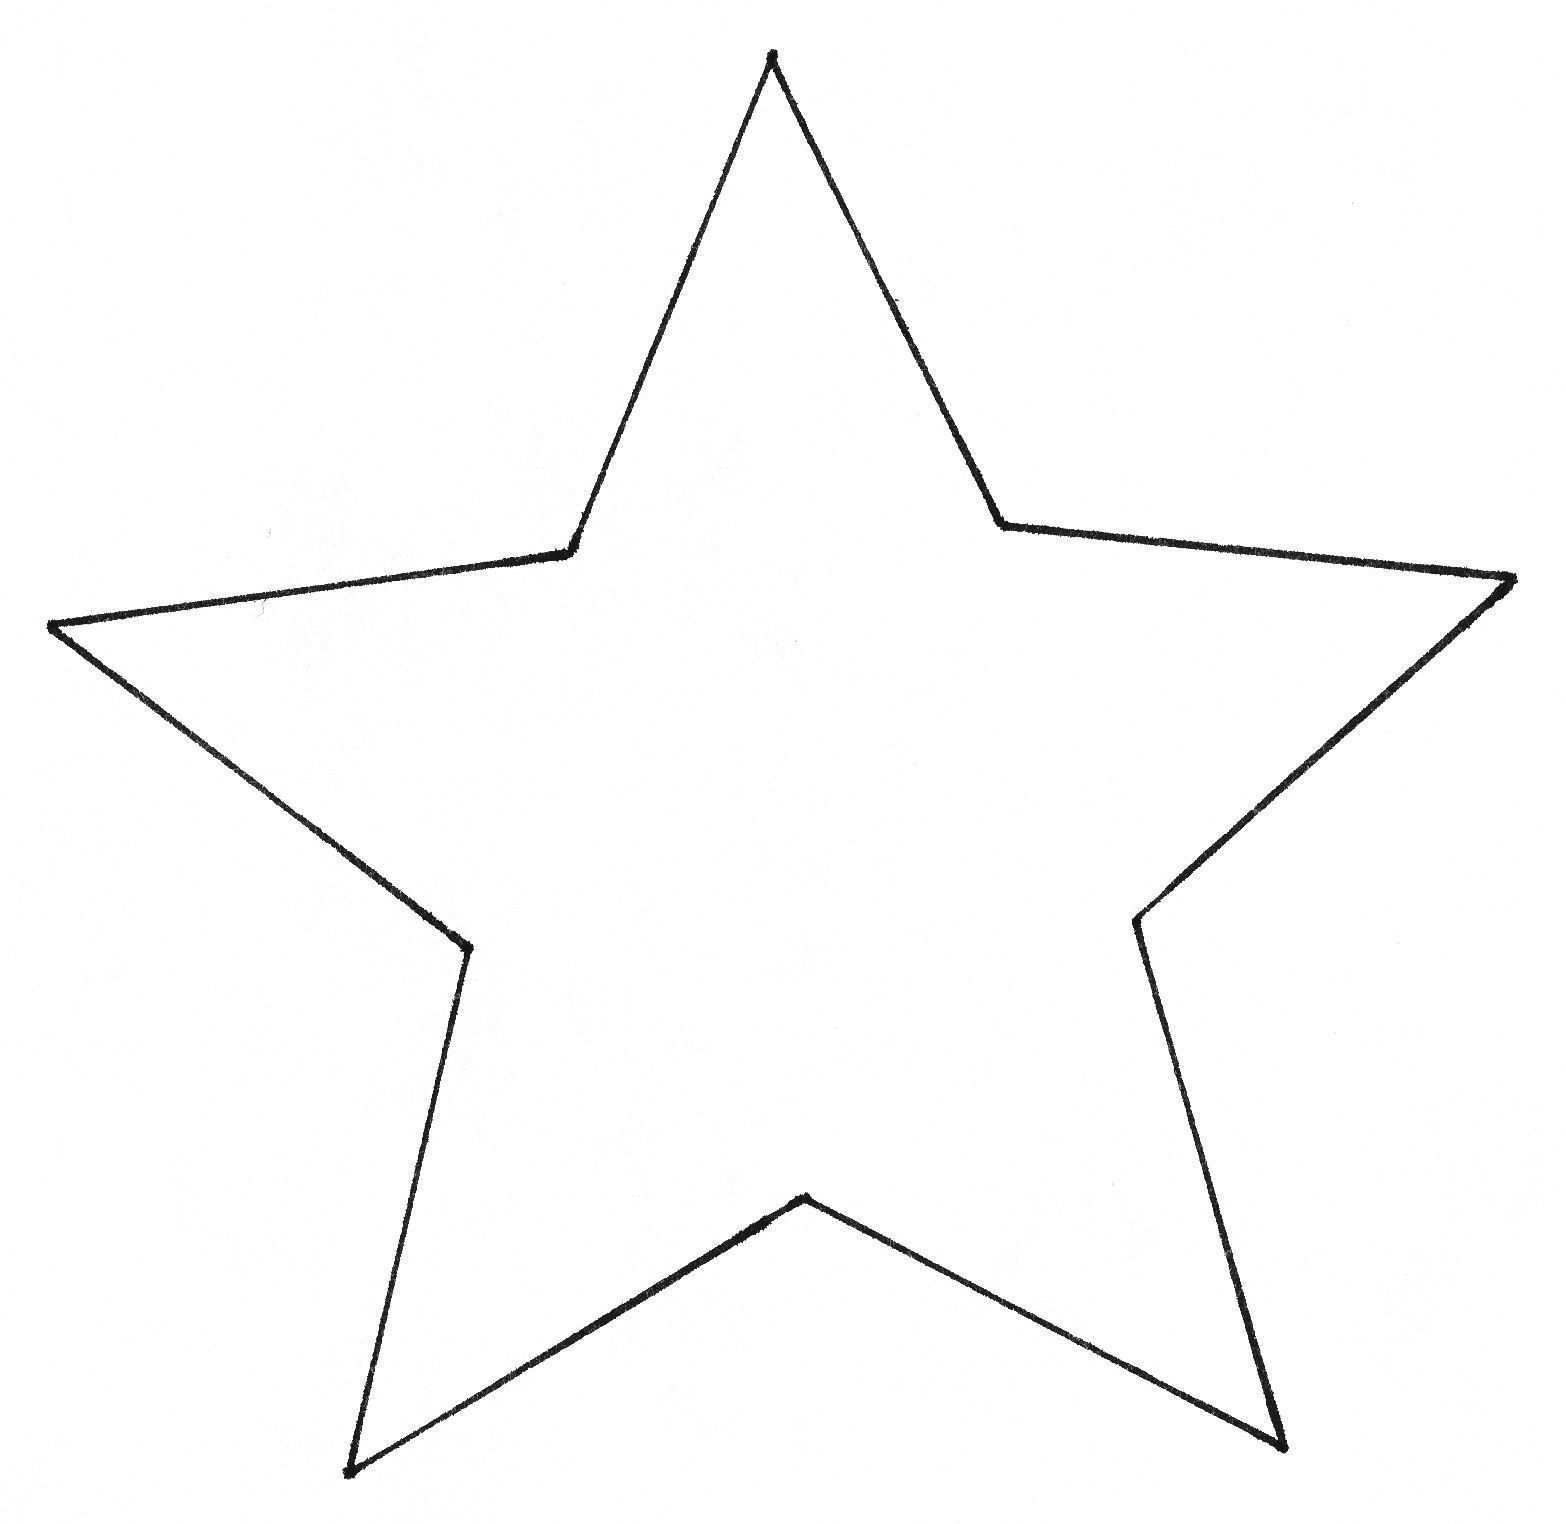 Neu Sterne Basteln Mit Kindern Vorlagen Farbung Malvorlagen Malvorlagenfurkin Sterne Basteln Mit Kindern Sterne Basteln Vorlage Weihnachten Basteln Vorlagen